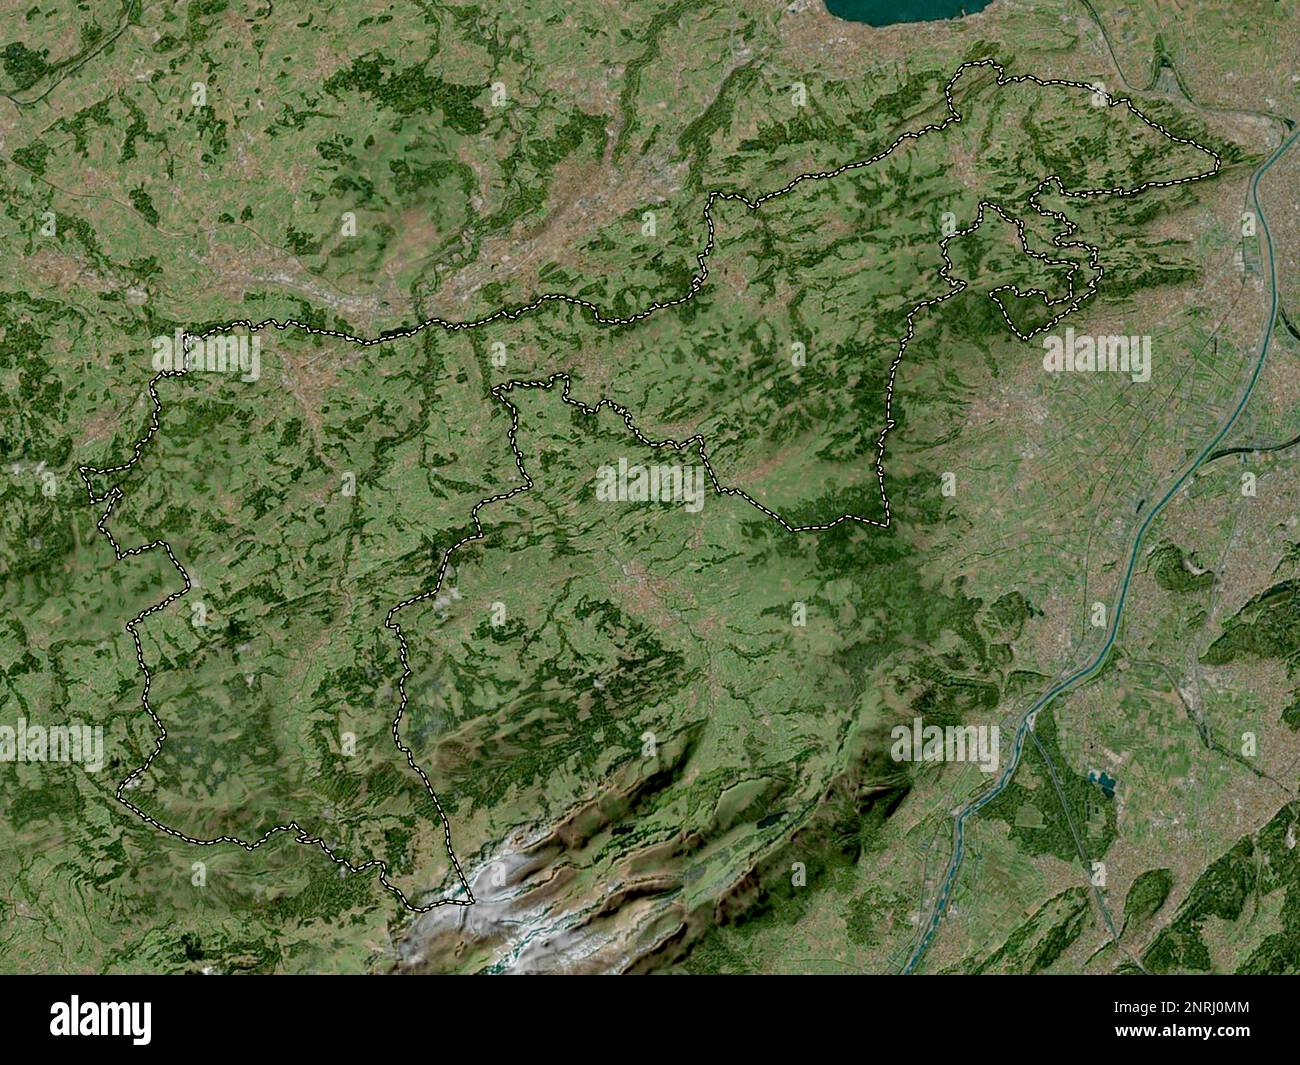 Appenzell Ausserrhoden, canton of Switzerland. High resolution satellite map Stock Photo